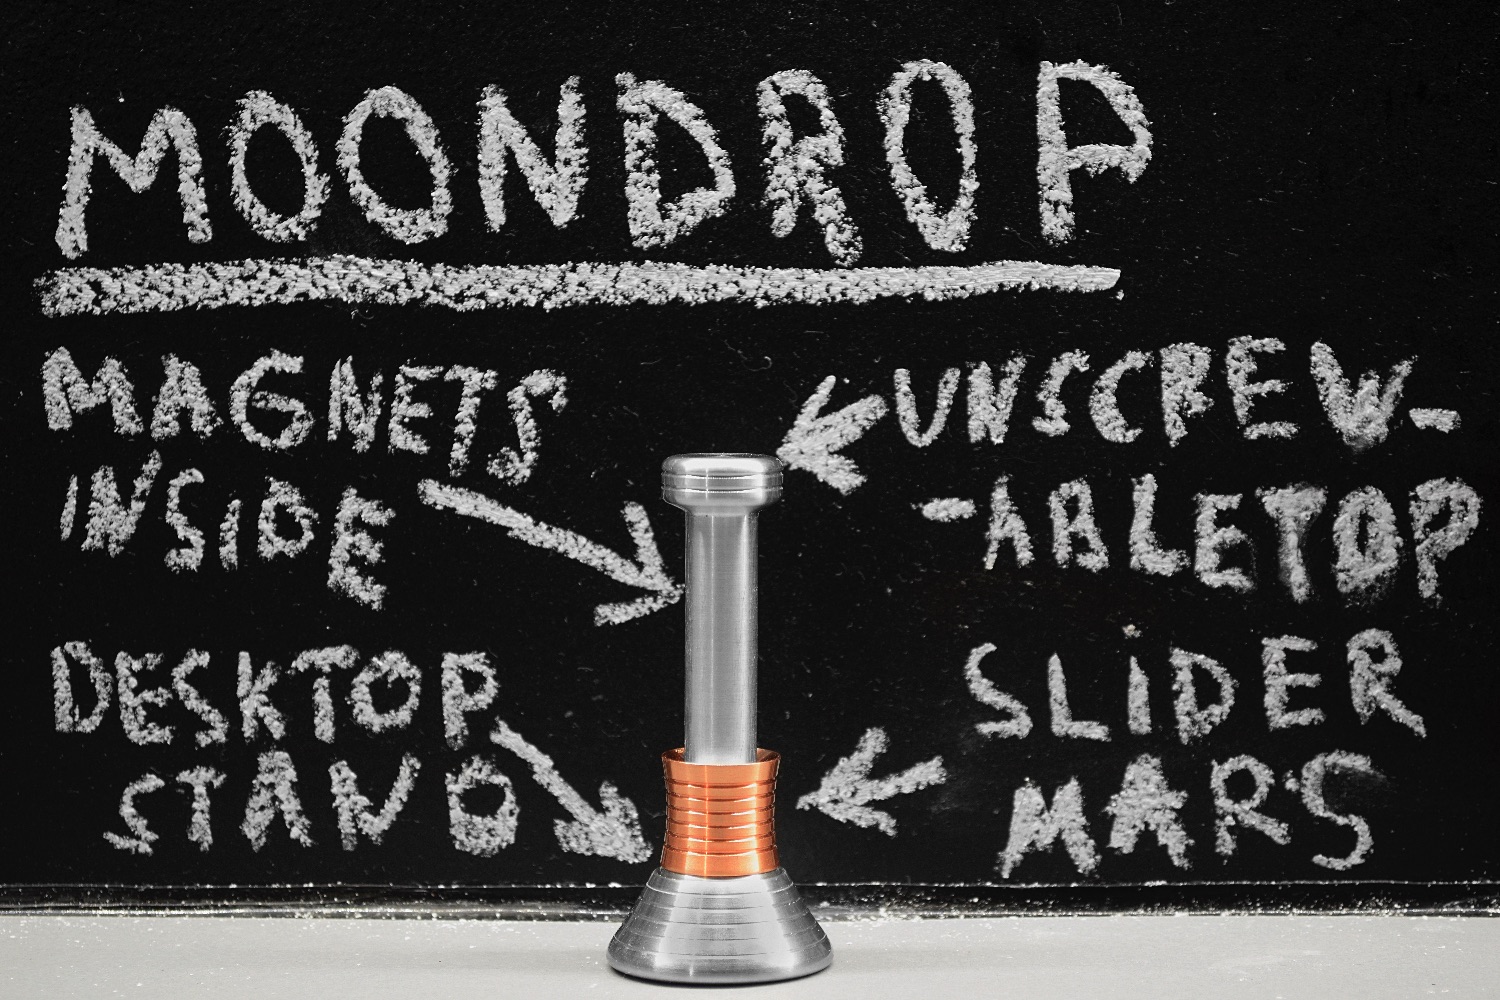 moondrop kickstarter desk toy mars edition blackboard